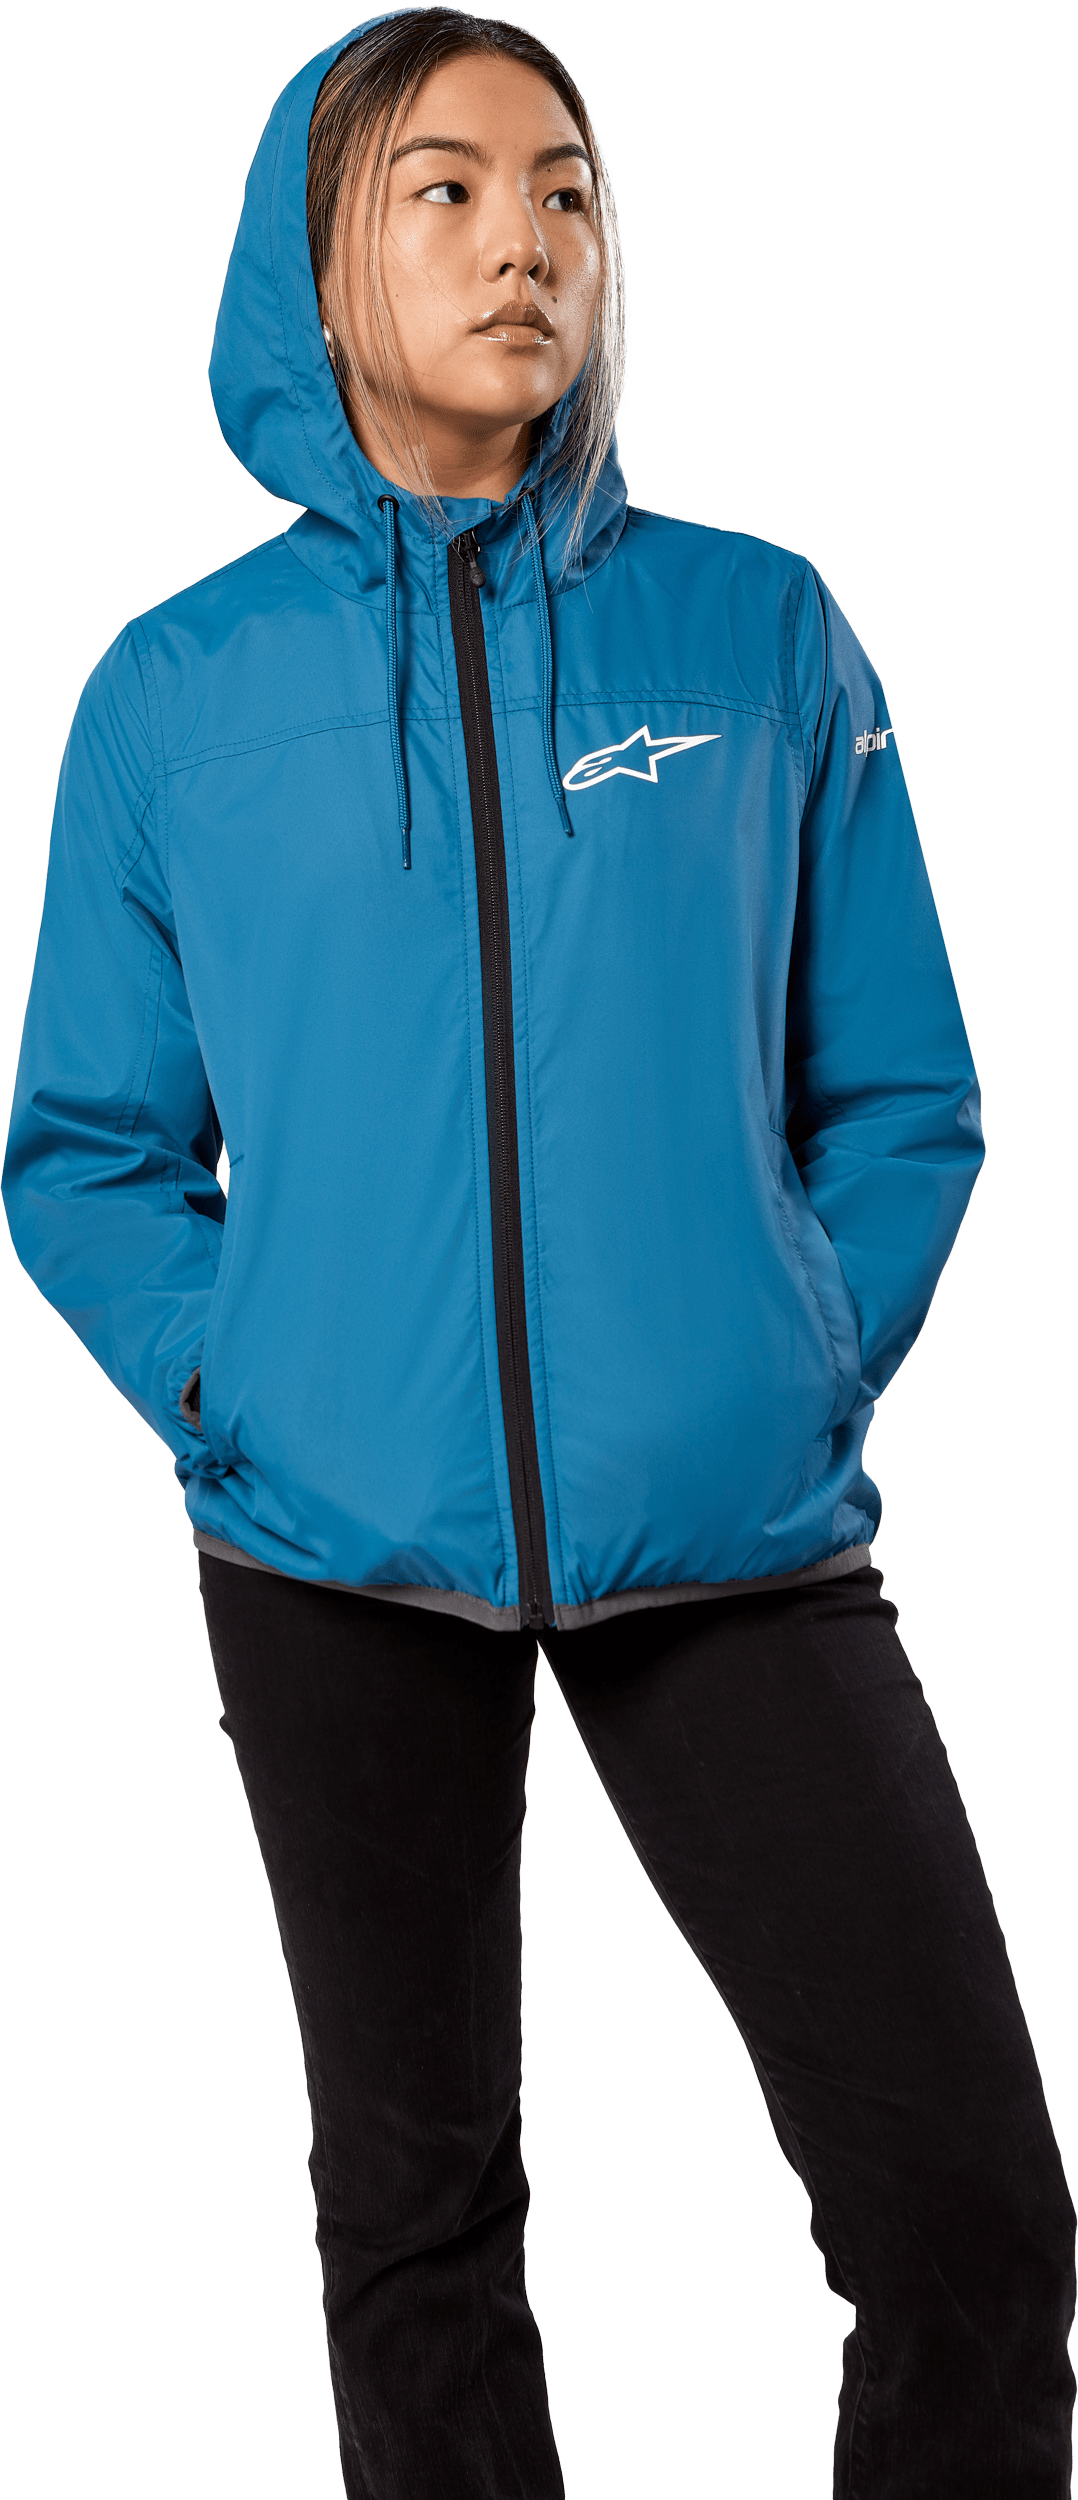 Western Powersports Jacket Women's Treq Windbreaker By Alpinestars